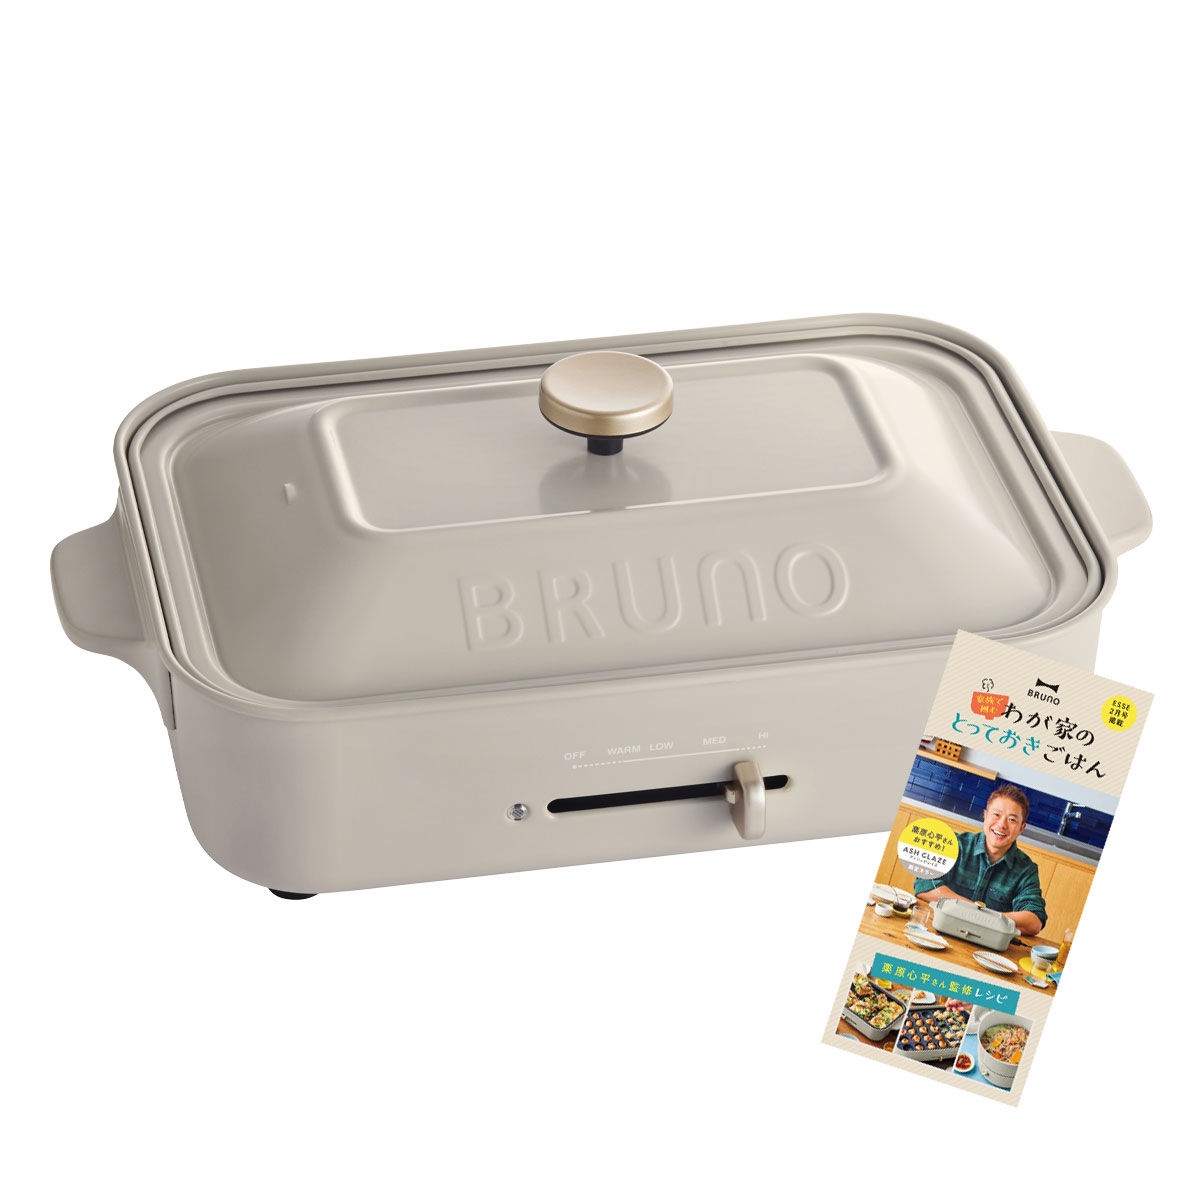 ブルーノ ホットプレート BOE021 BRUNO コンパクトホットプレート キッチン家電 電気プレート 焼肉 たこ焼き 1年保証